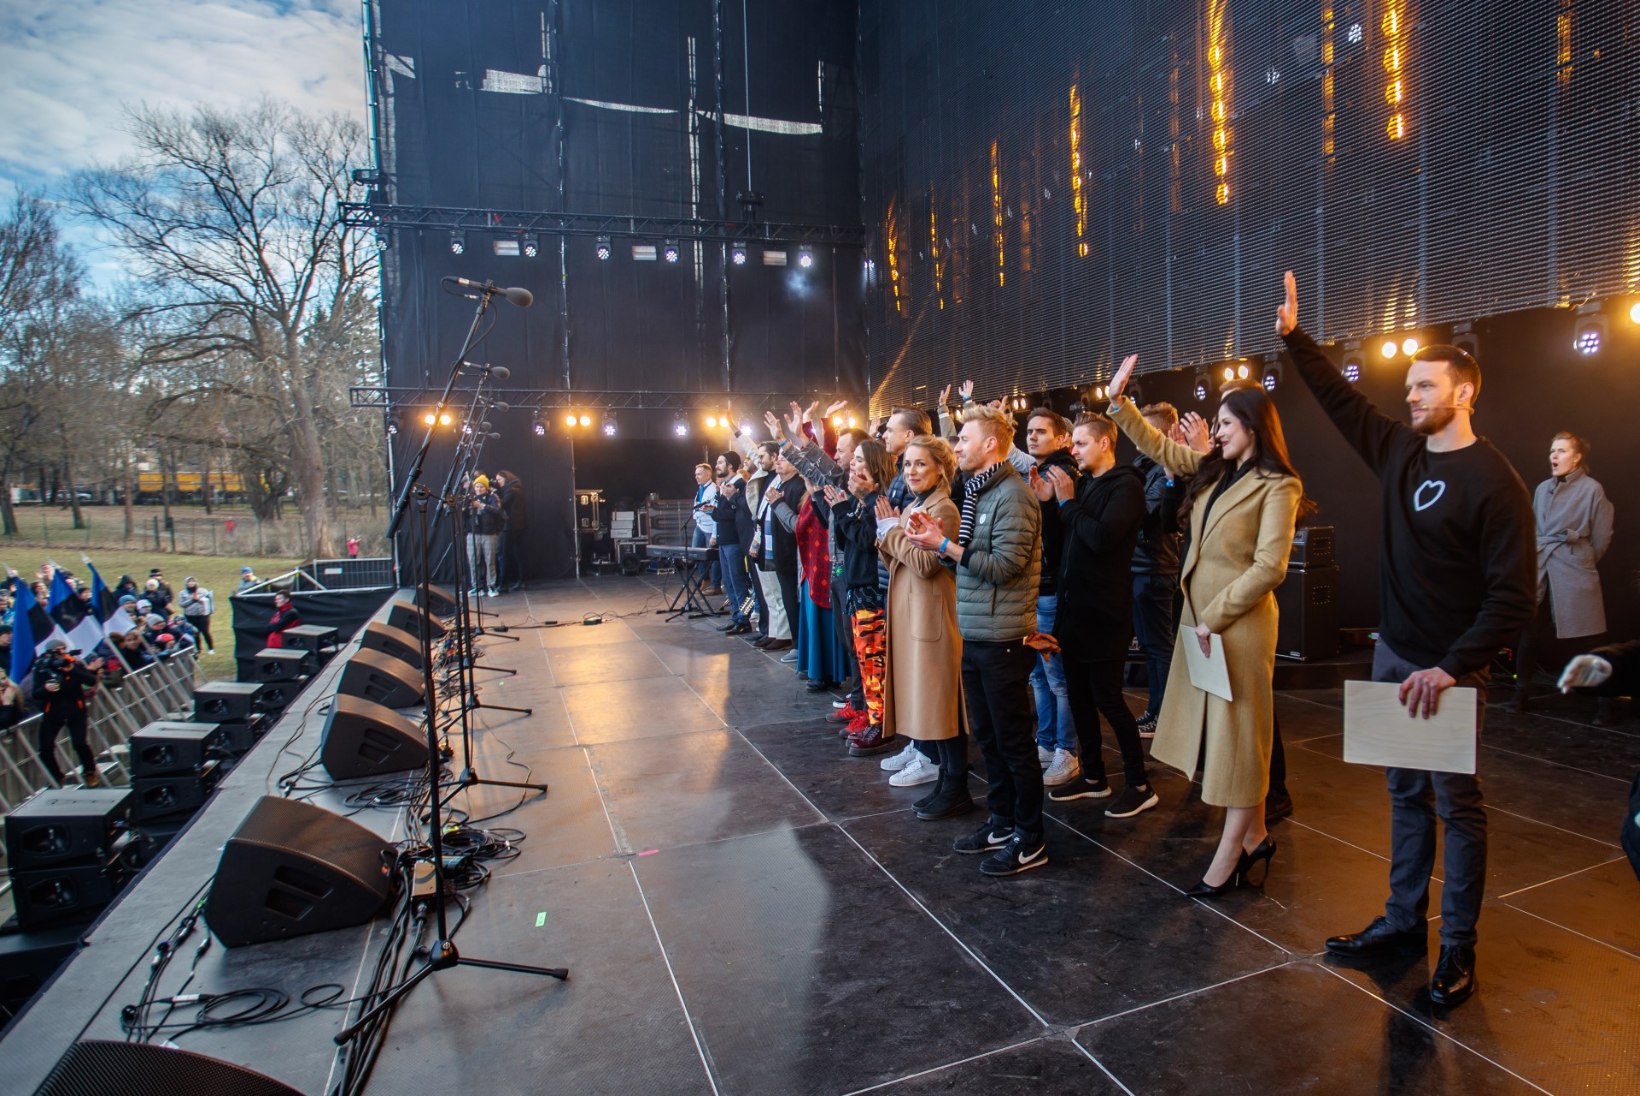 GALERII | Eesti artistide koorekiht ja tuhanded külalised: vaata, mis toimus lauluväljakul kontserdil „Kõigi Eesti Laul“!